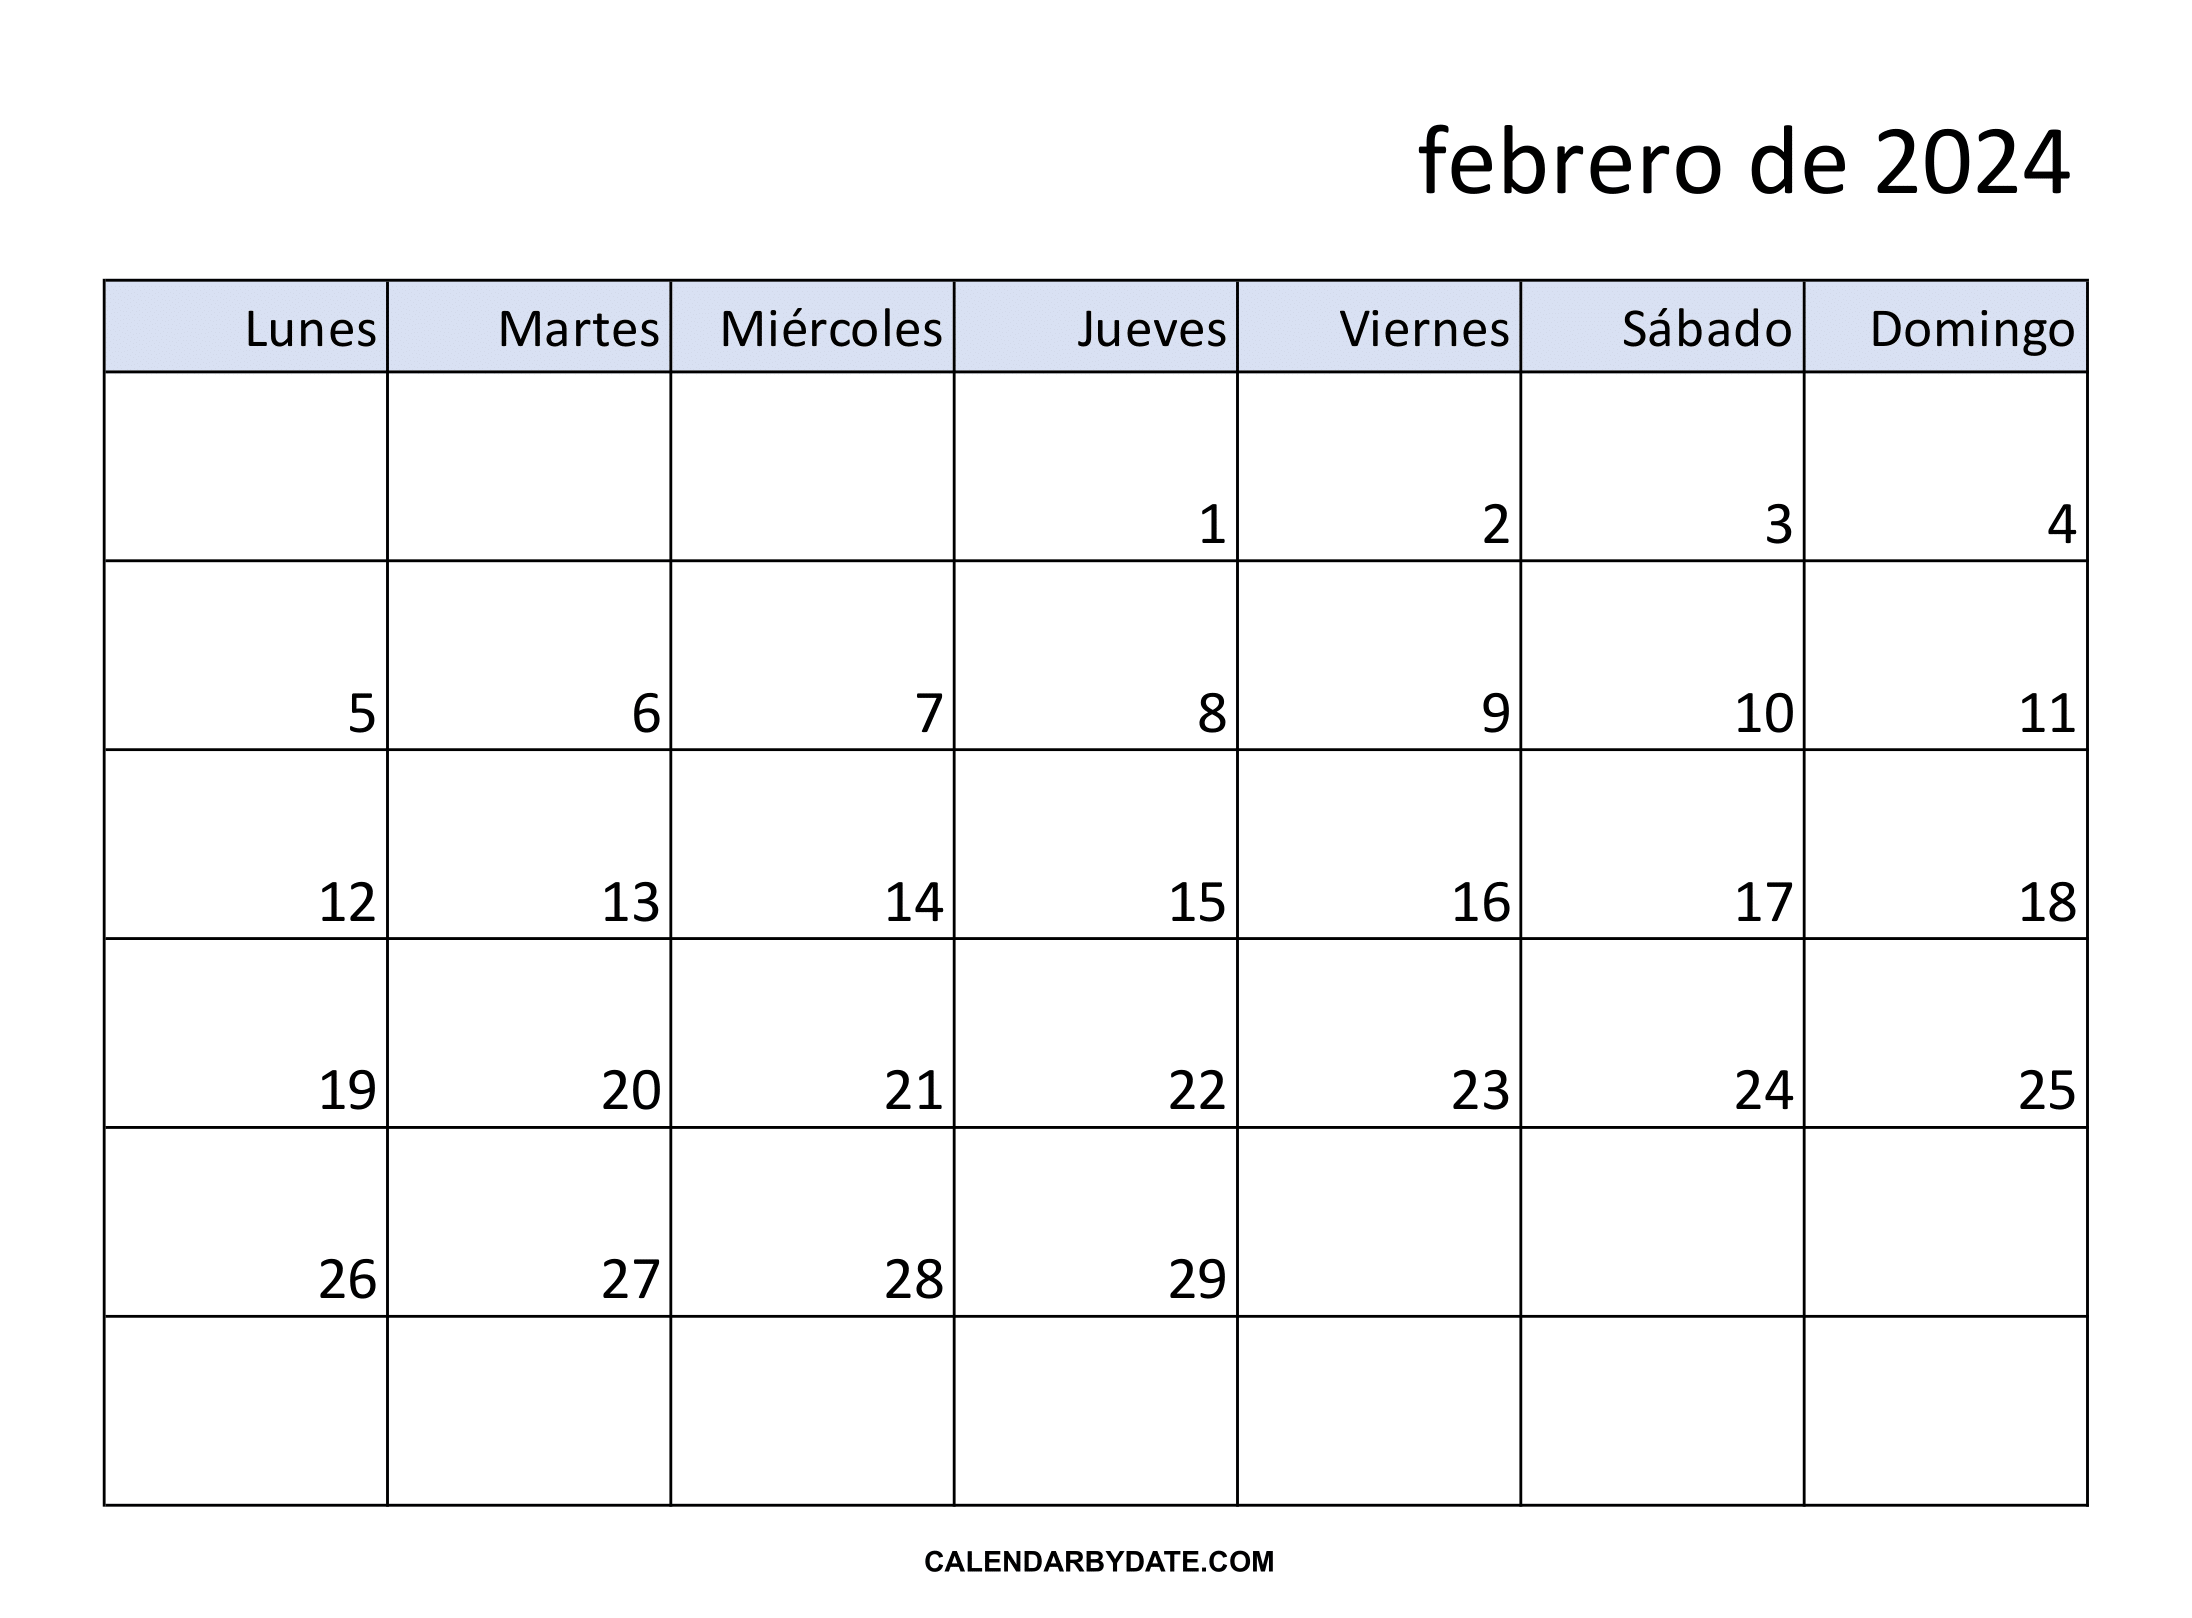 Calendario febrero 2024 argentina